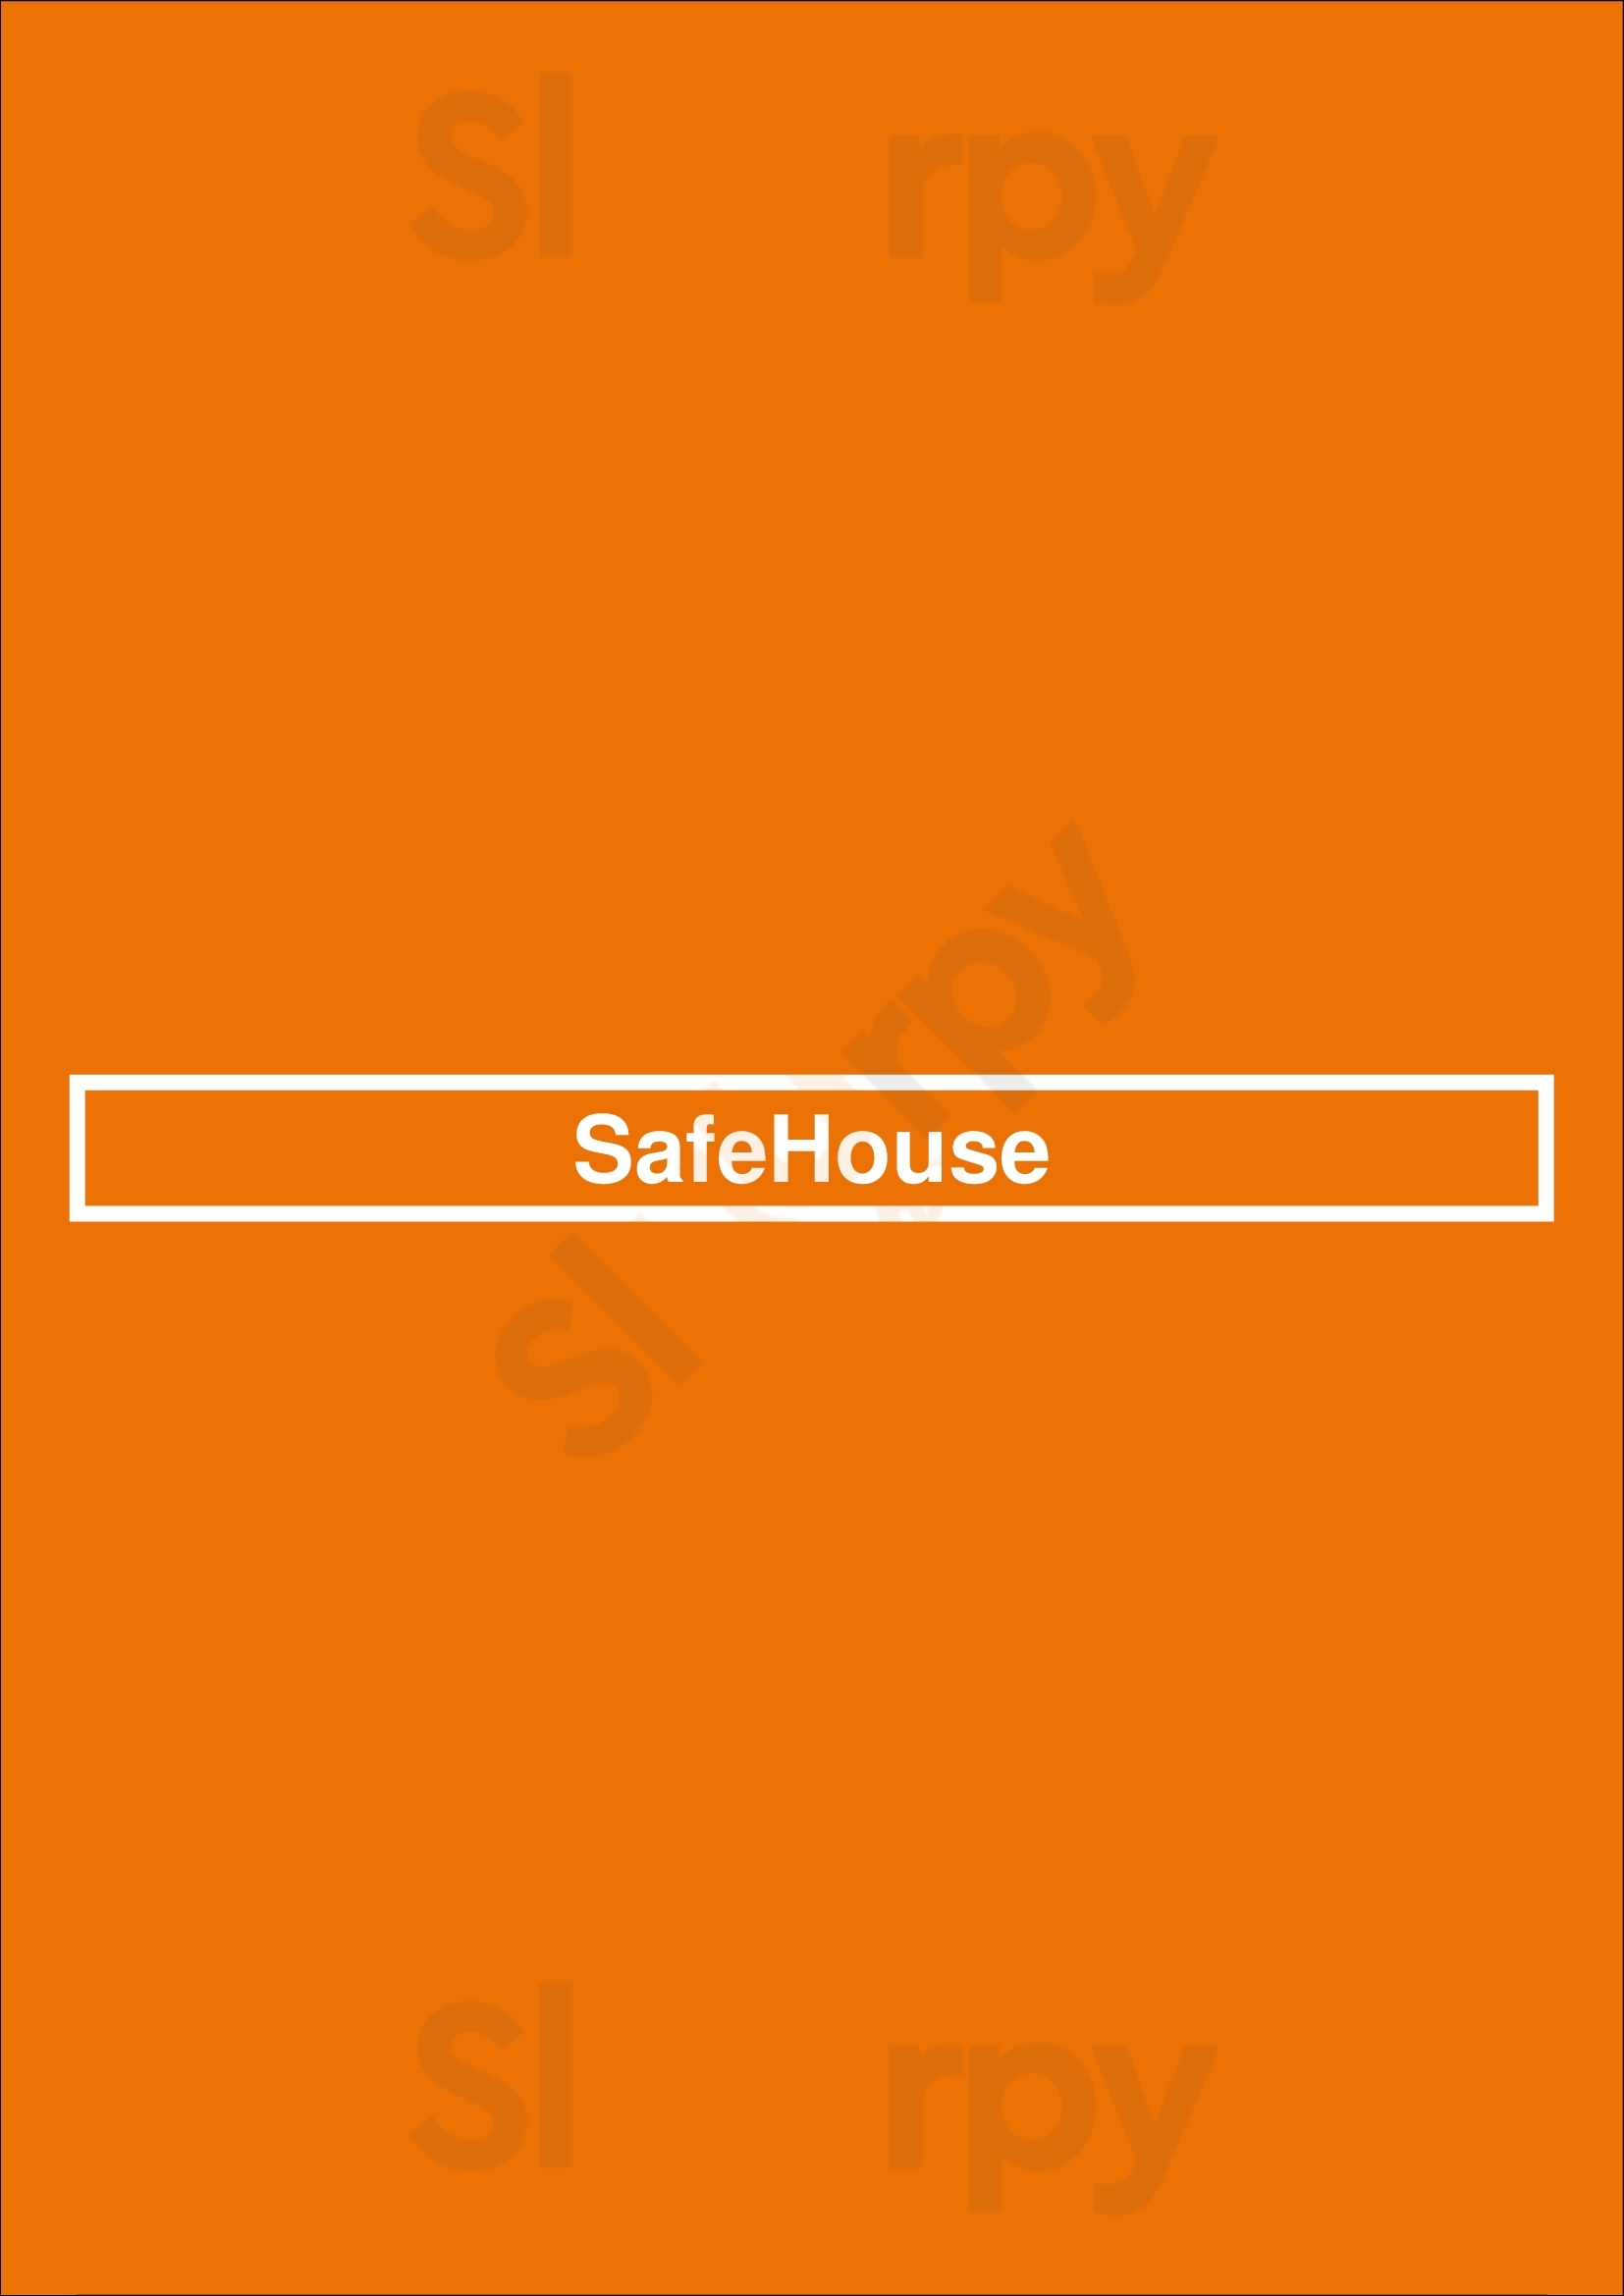 Safehouse Milwaukee Menu - 1